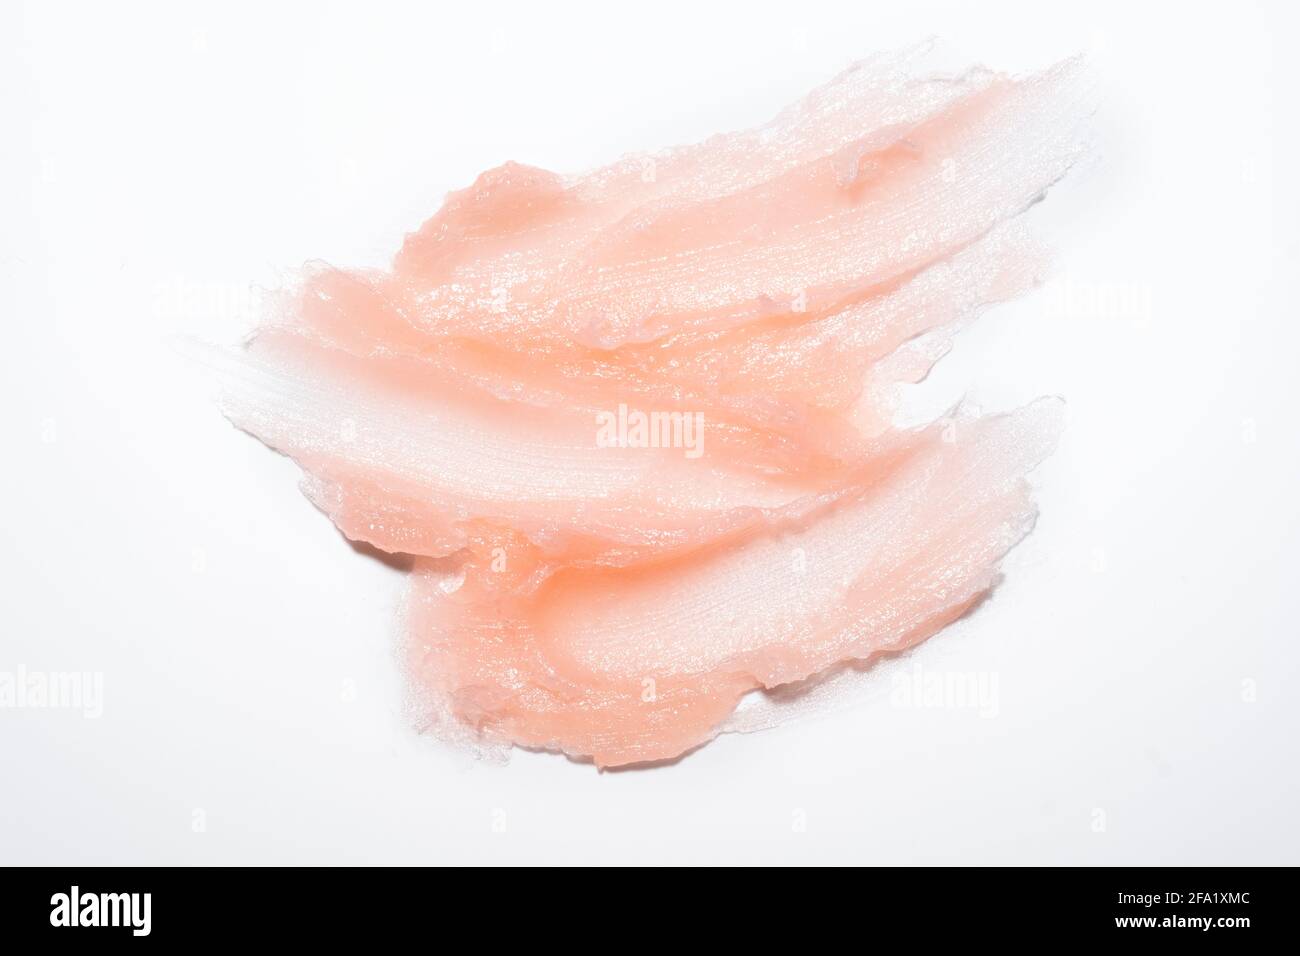 Échantillon de produit cosmétique texture de gel crémeuse taches sur fond blanc. Gommage cosmétique rose texturé pour le visage et le corps - image Banque D'Images